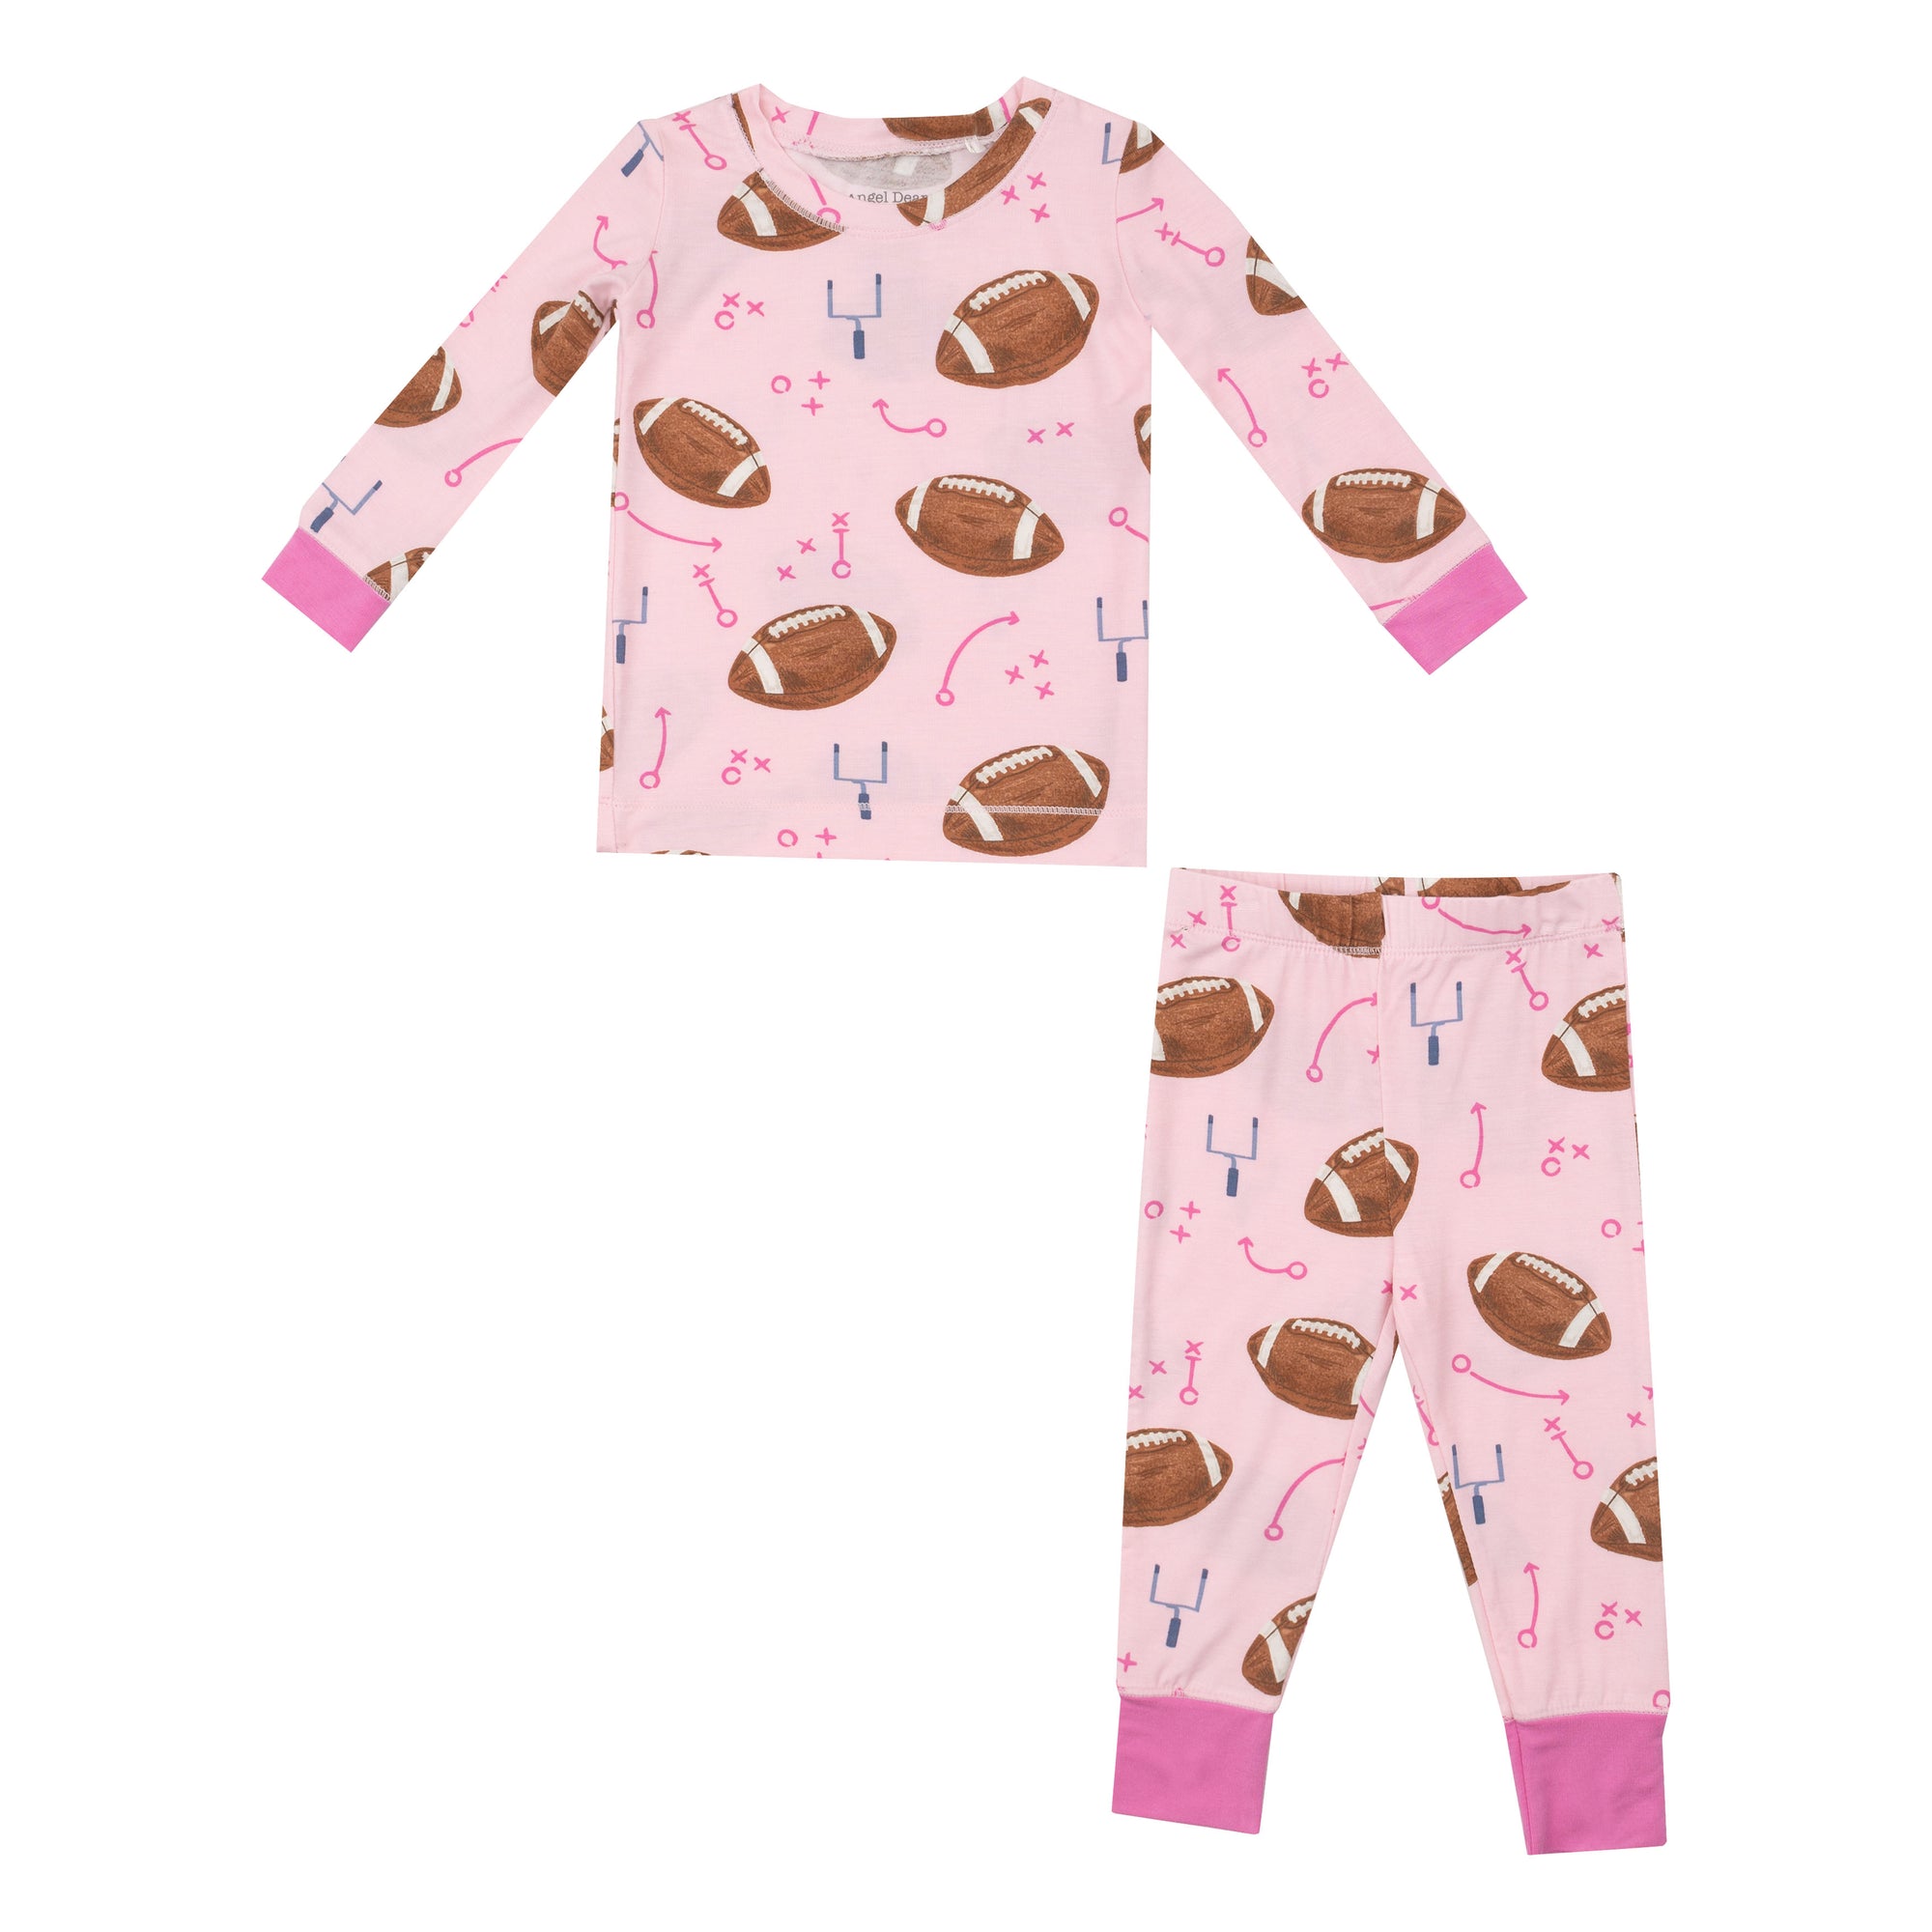 Footballs Pink Long Sleeve Loungewear Pajama Set